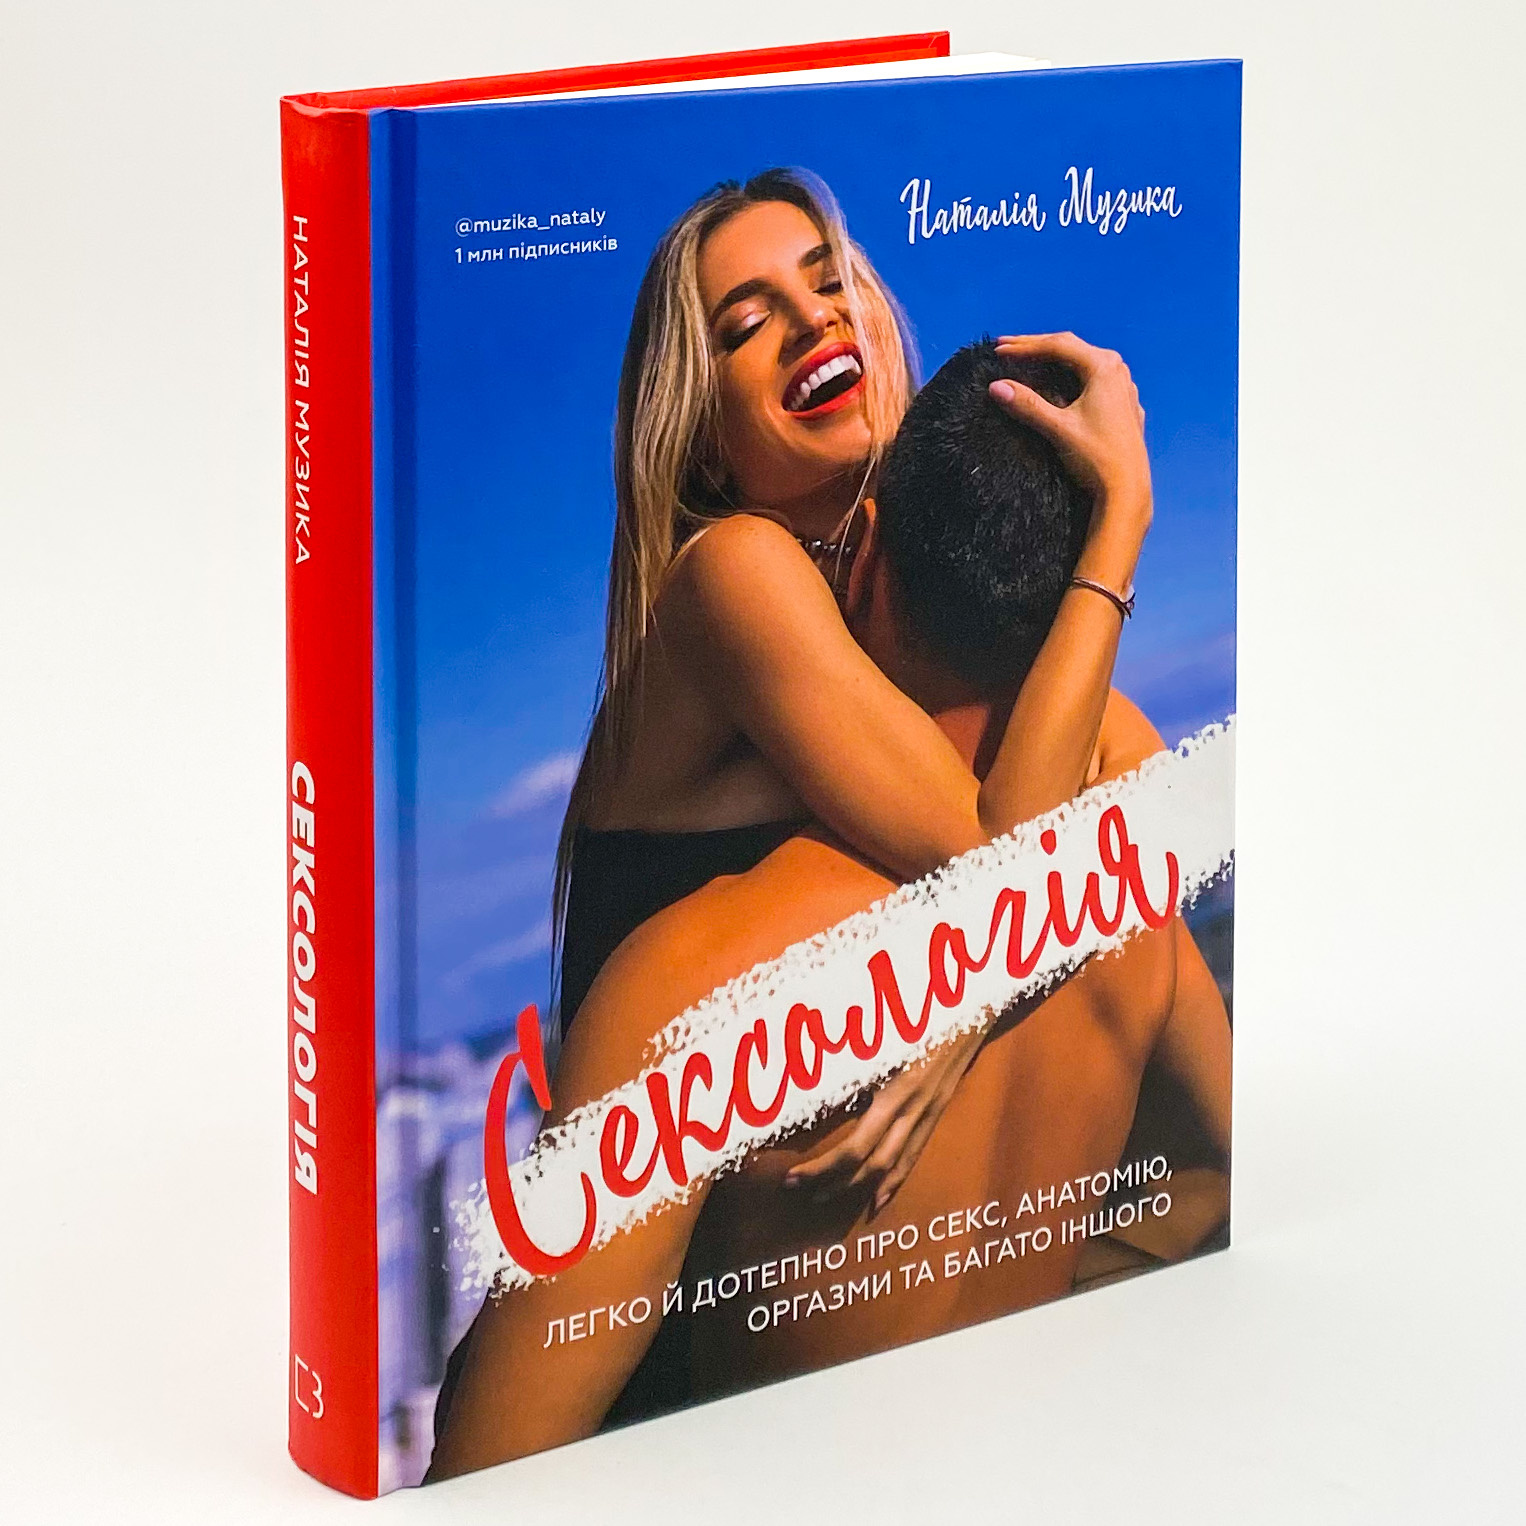 Сексологія. Легко й дотепно про секс, анатомію, оргазми та багато іншого. Автор — Наталія Музика. 